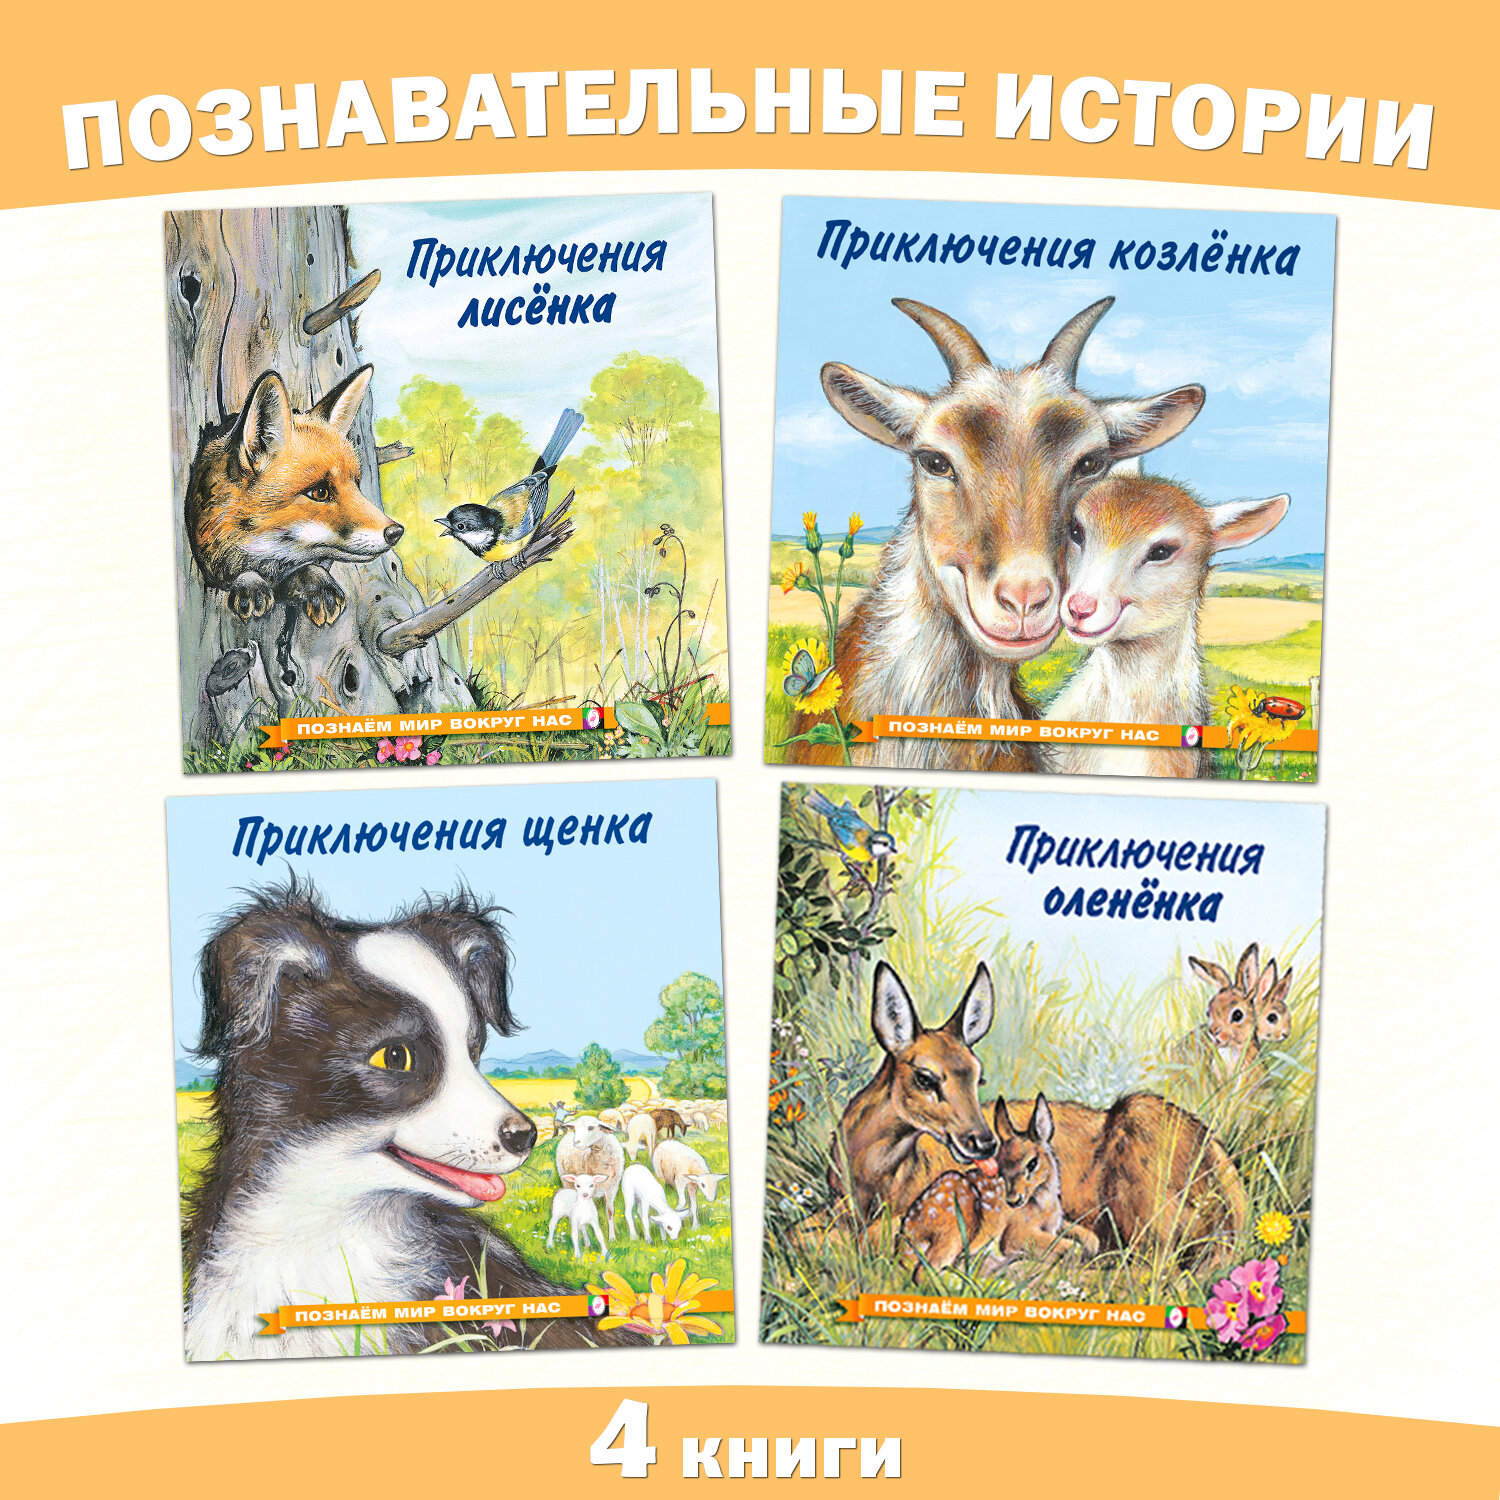 Сказки для детей Издательство Фламинго Познаем мир вокруг нас Комплект из 4 книг Приключения лисенка, олененка, щенка, козленка